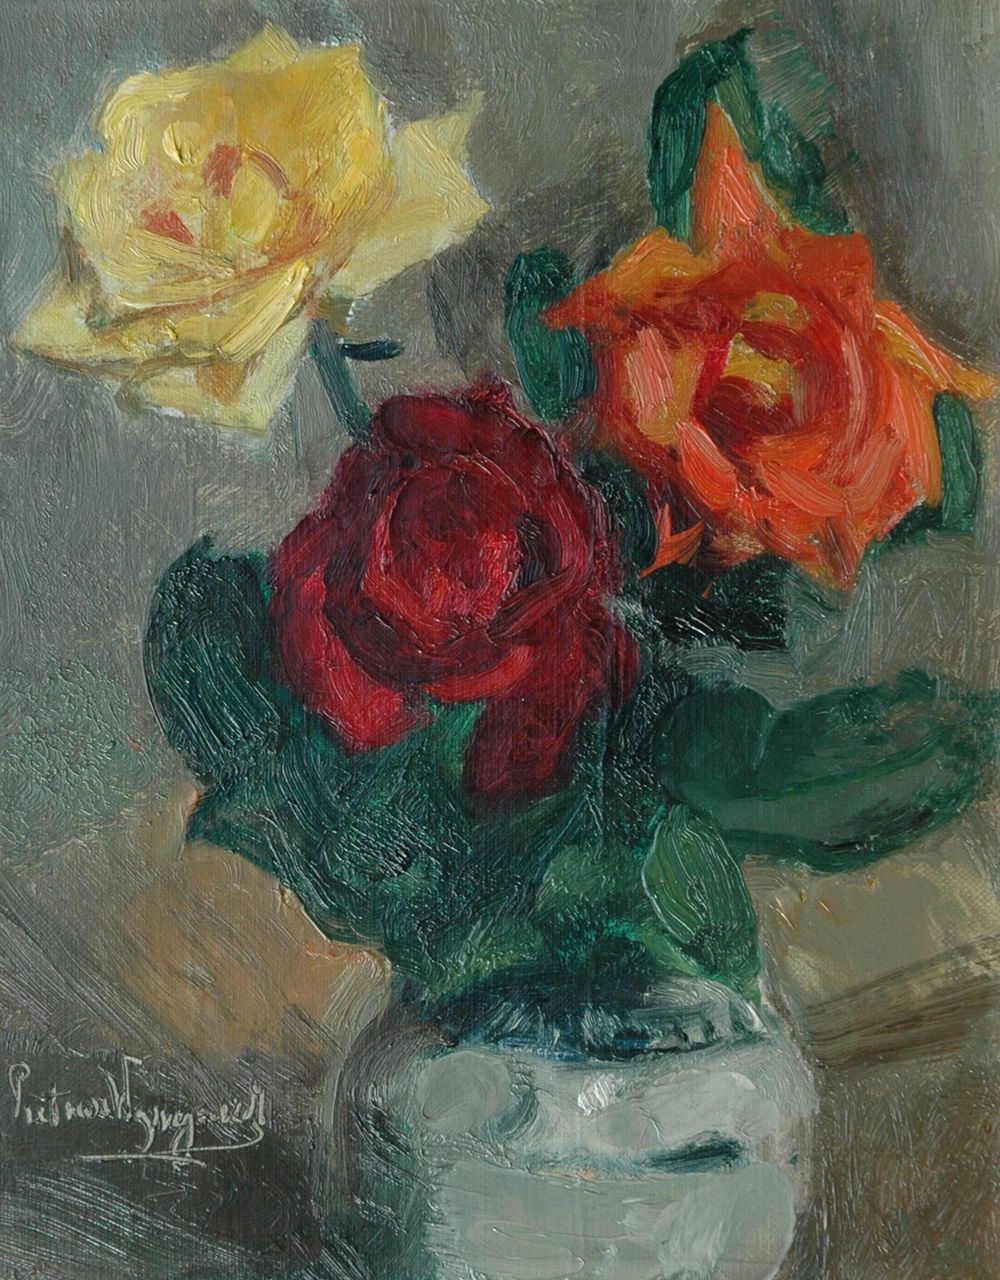 Wijngaerdt P.T. van | Petrus Theodorus 'Piet' van Wijngaerdt, Roses in a Cologne pot, oil on canvas 30.8 x 24.8 cm, signed l.l.